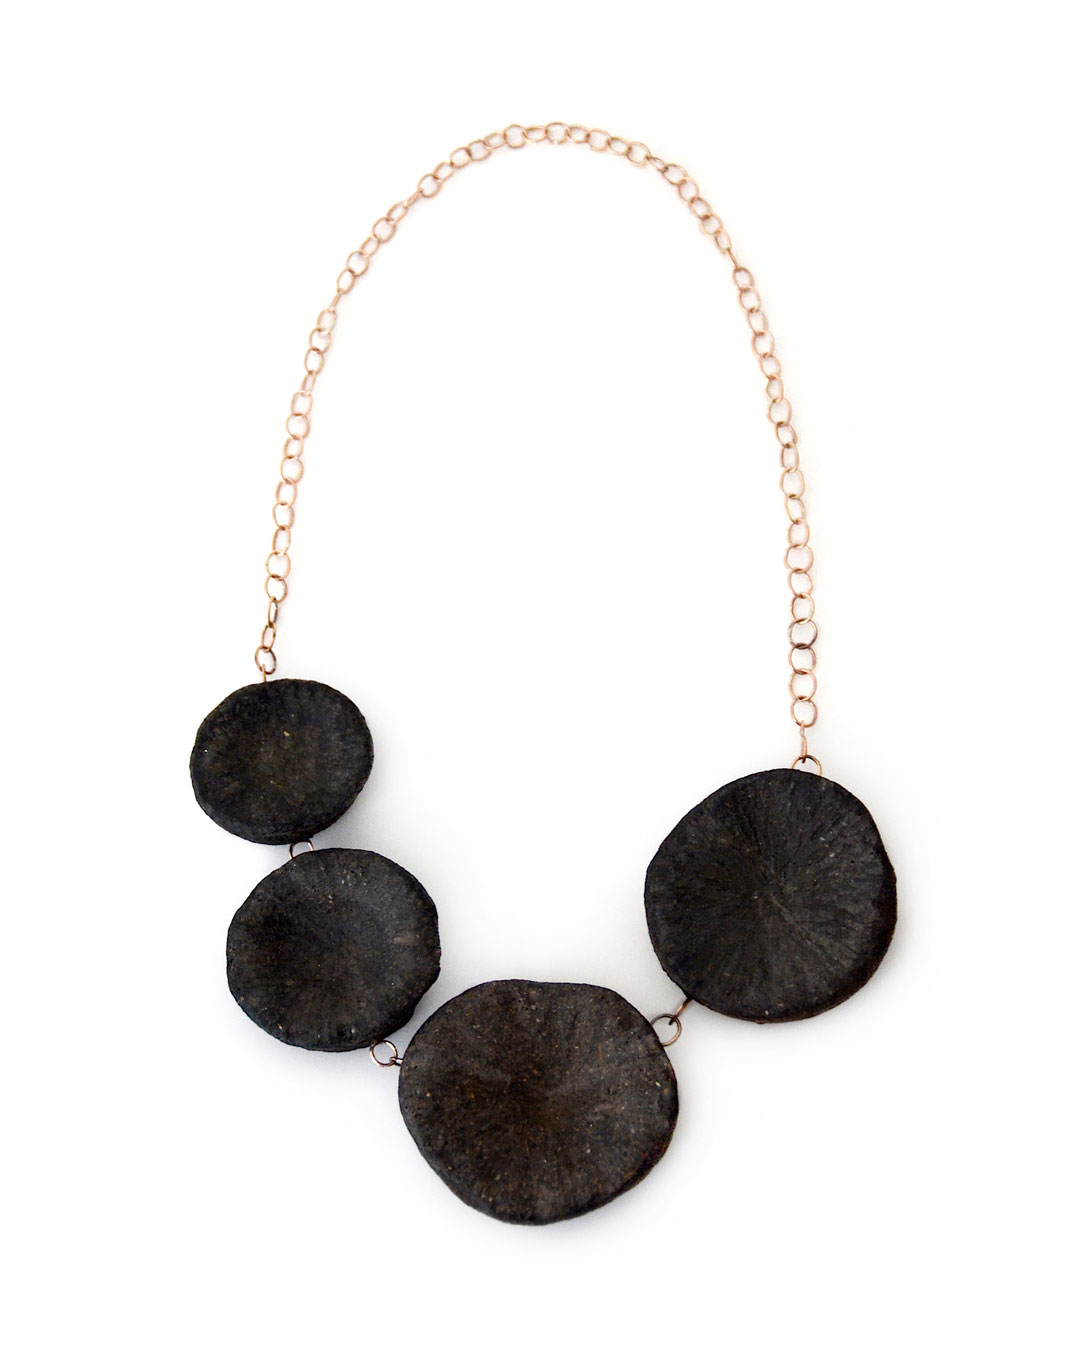 Carmen Hauser, Erdmulden, 2014, necklace; soil, resin, 8ct rose gold, silver solder, 290 x 170 x 25 mm, €2375